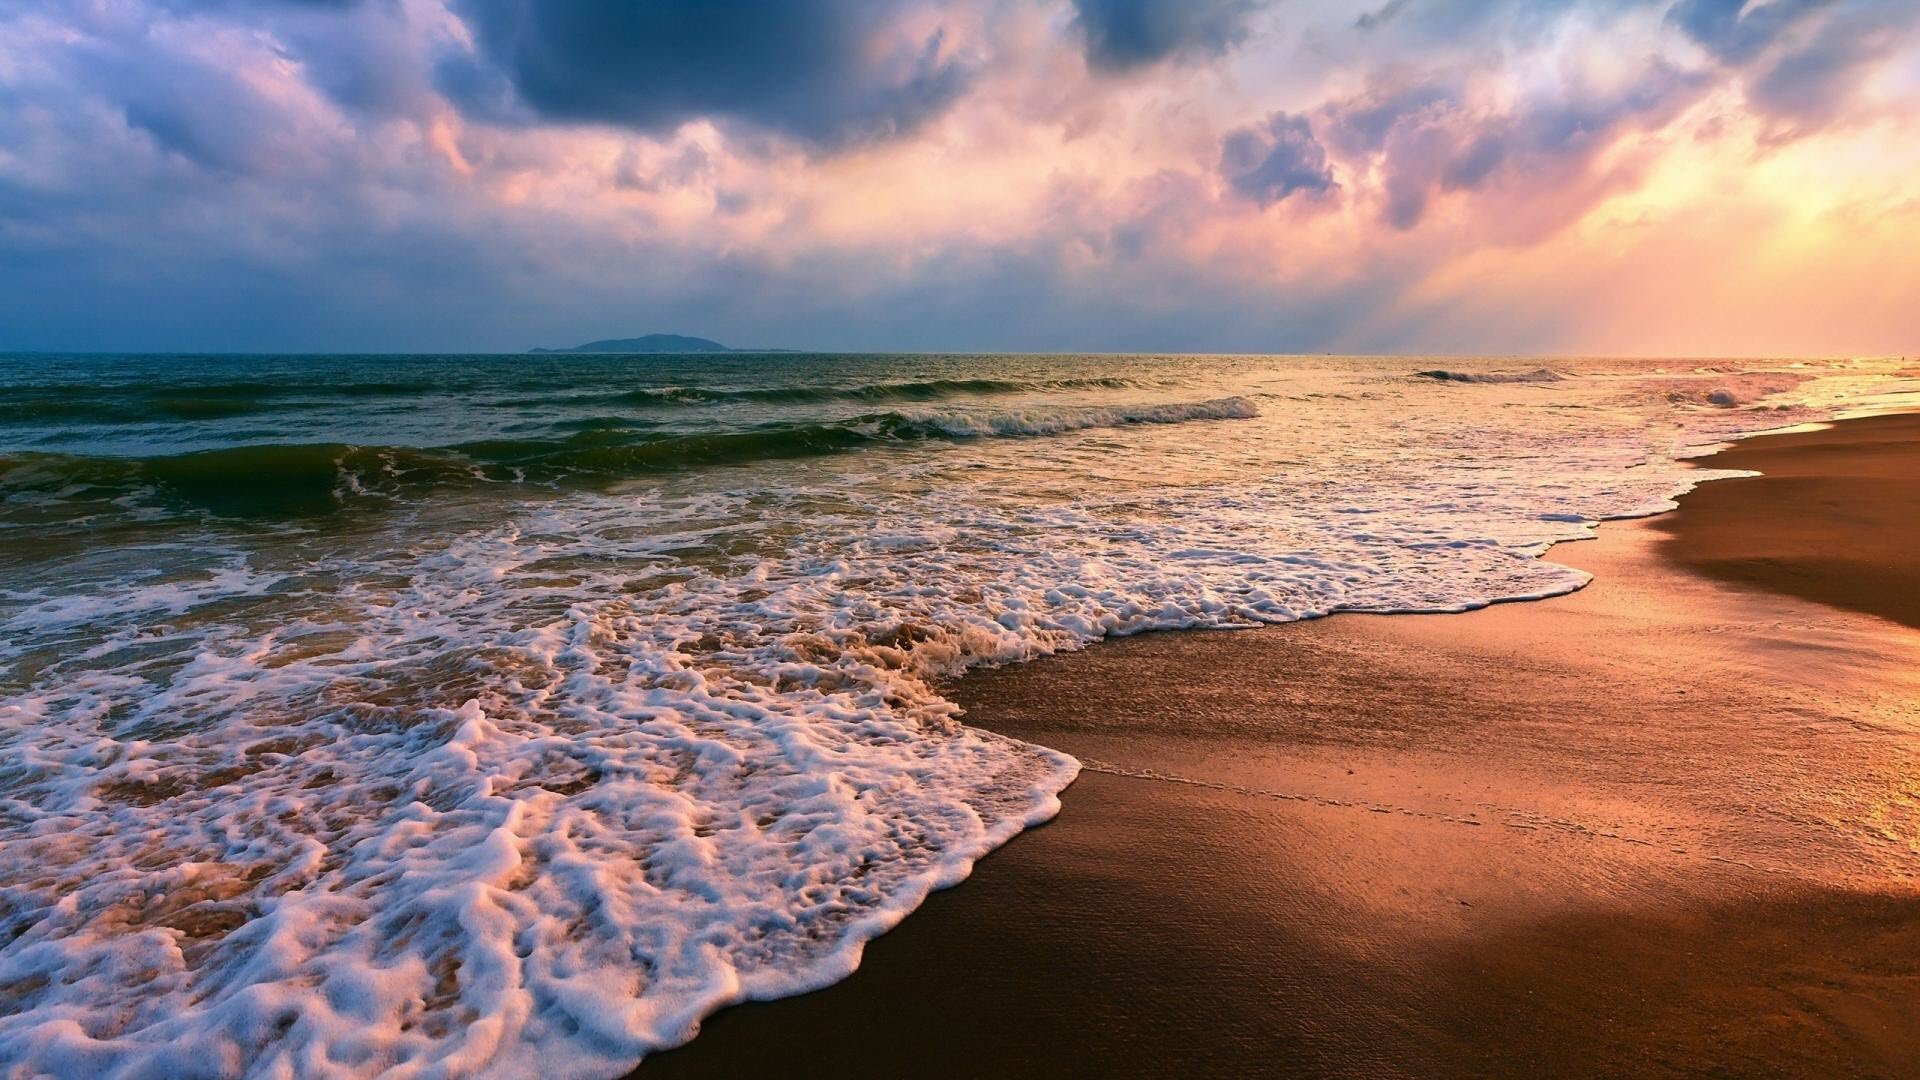 Hãy chào đón một bức ảnh nền bãi biển đầy hoài niệm để làm nền cho thiết bị của bạn. Với bờ cát trắng mịn màng, biển xanh ngắt cuốn hút cùng với ánh nắng vàng rực rỡ, hình ảnh sẽ mang lại cảm giác thư giãn và sự tràn đầy năng lượng.